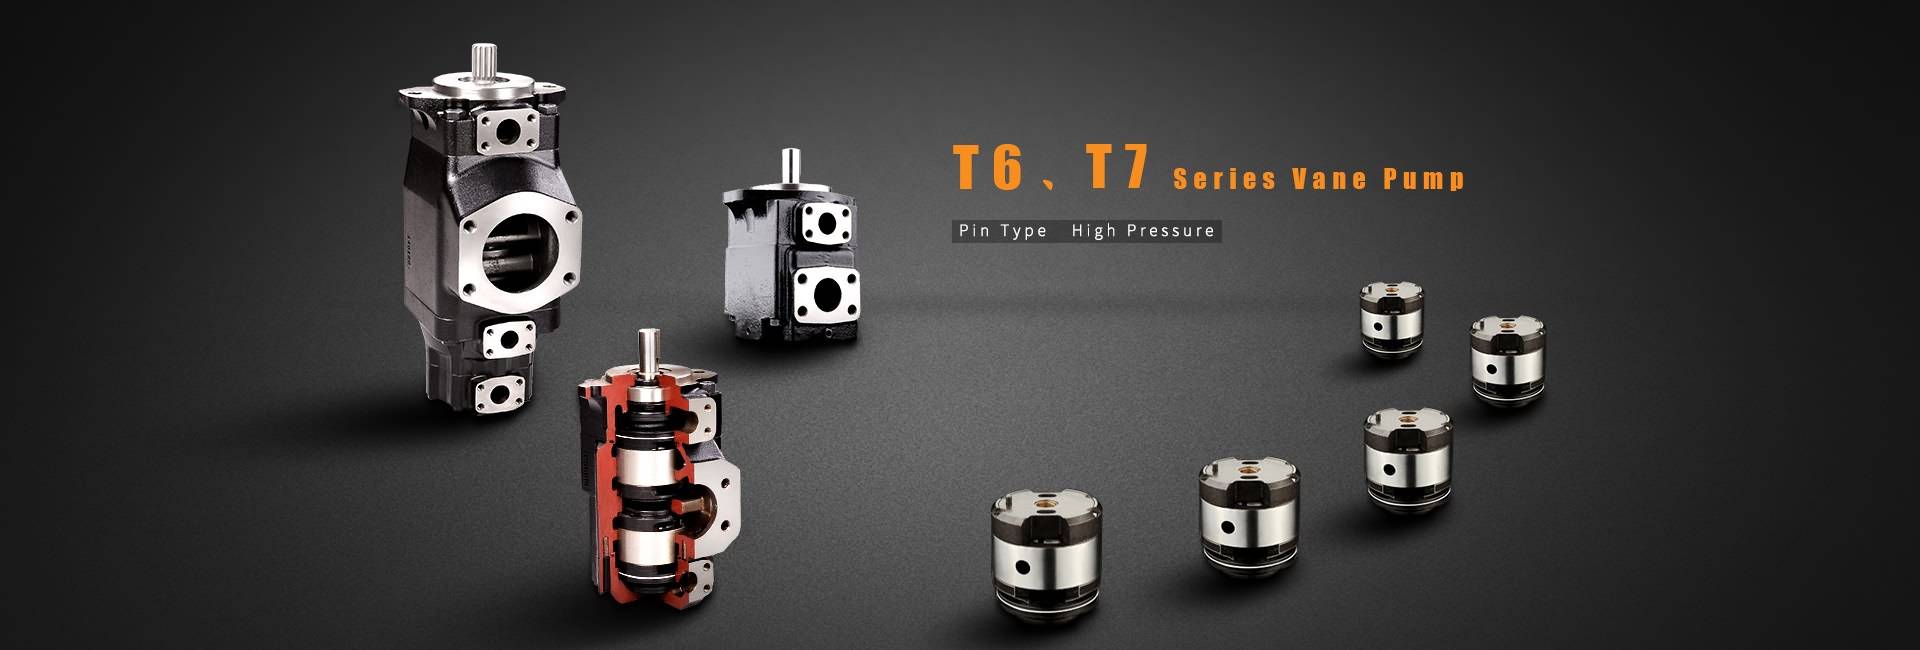 T6, T7 Series დადებითი პოზიცია ფართომასშტაბიან Pump